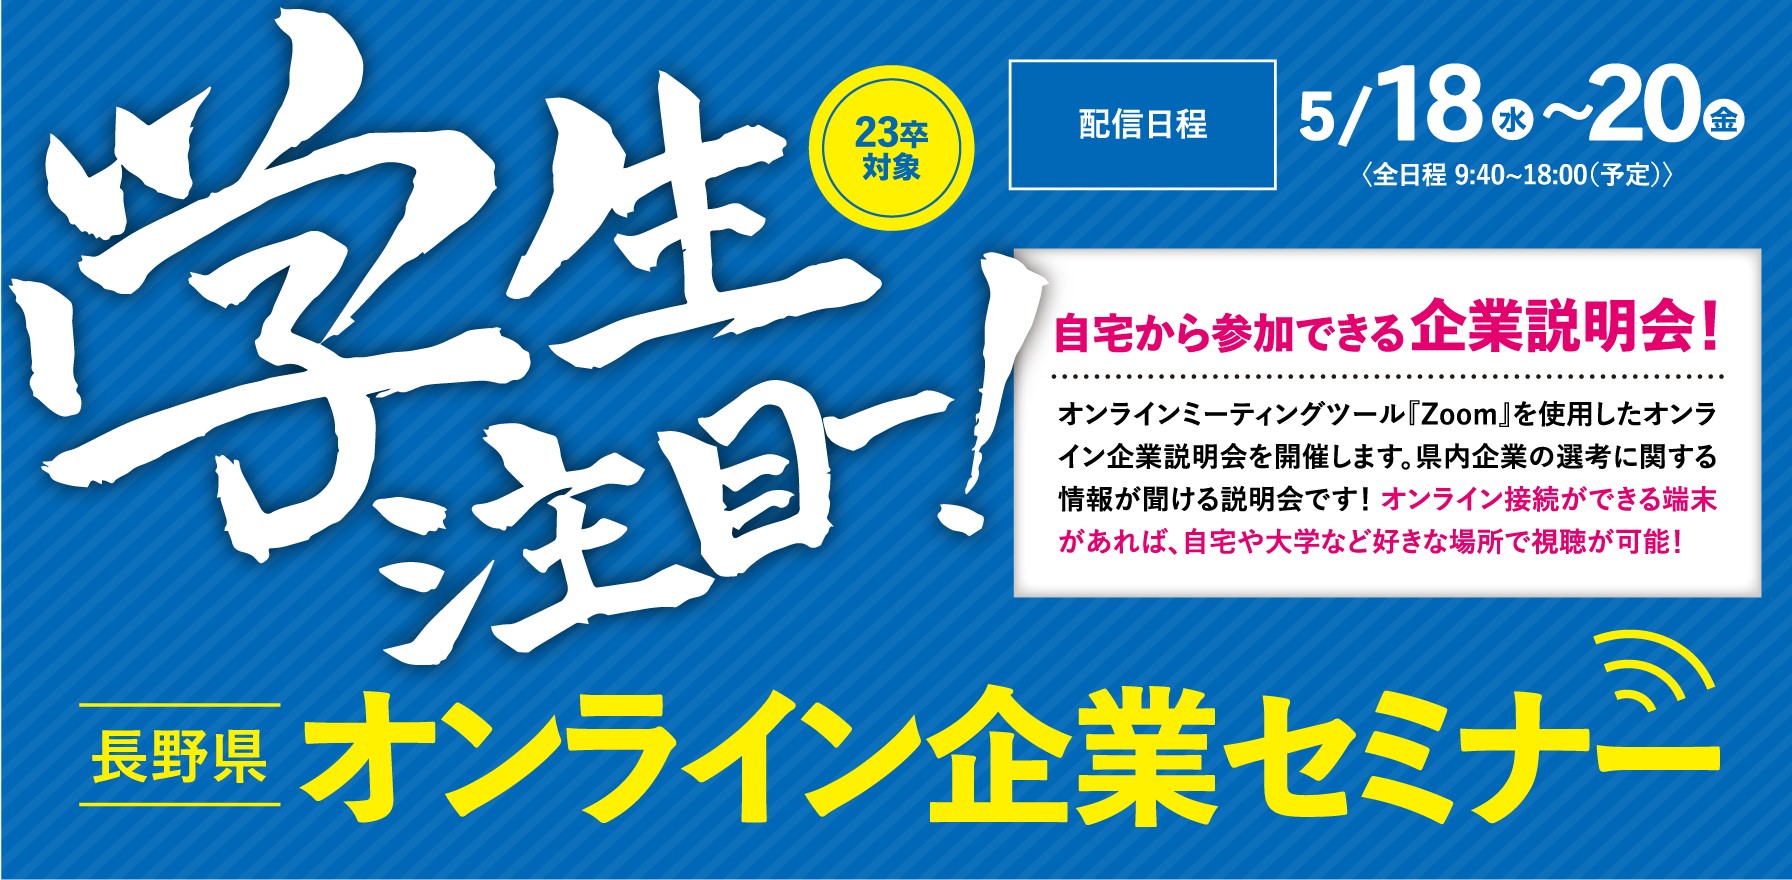 長野県オンライン企業セミナー